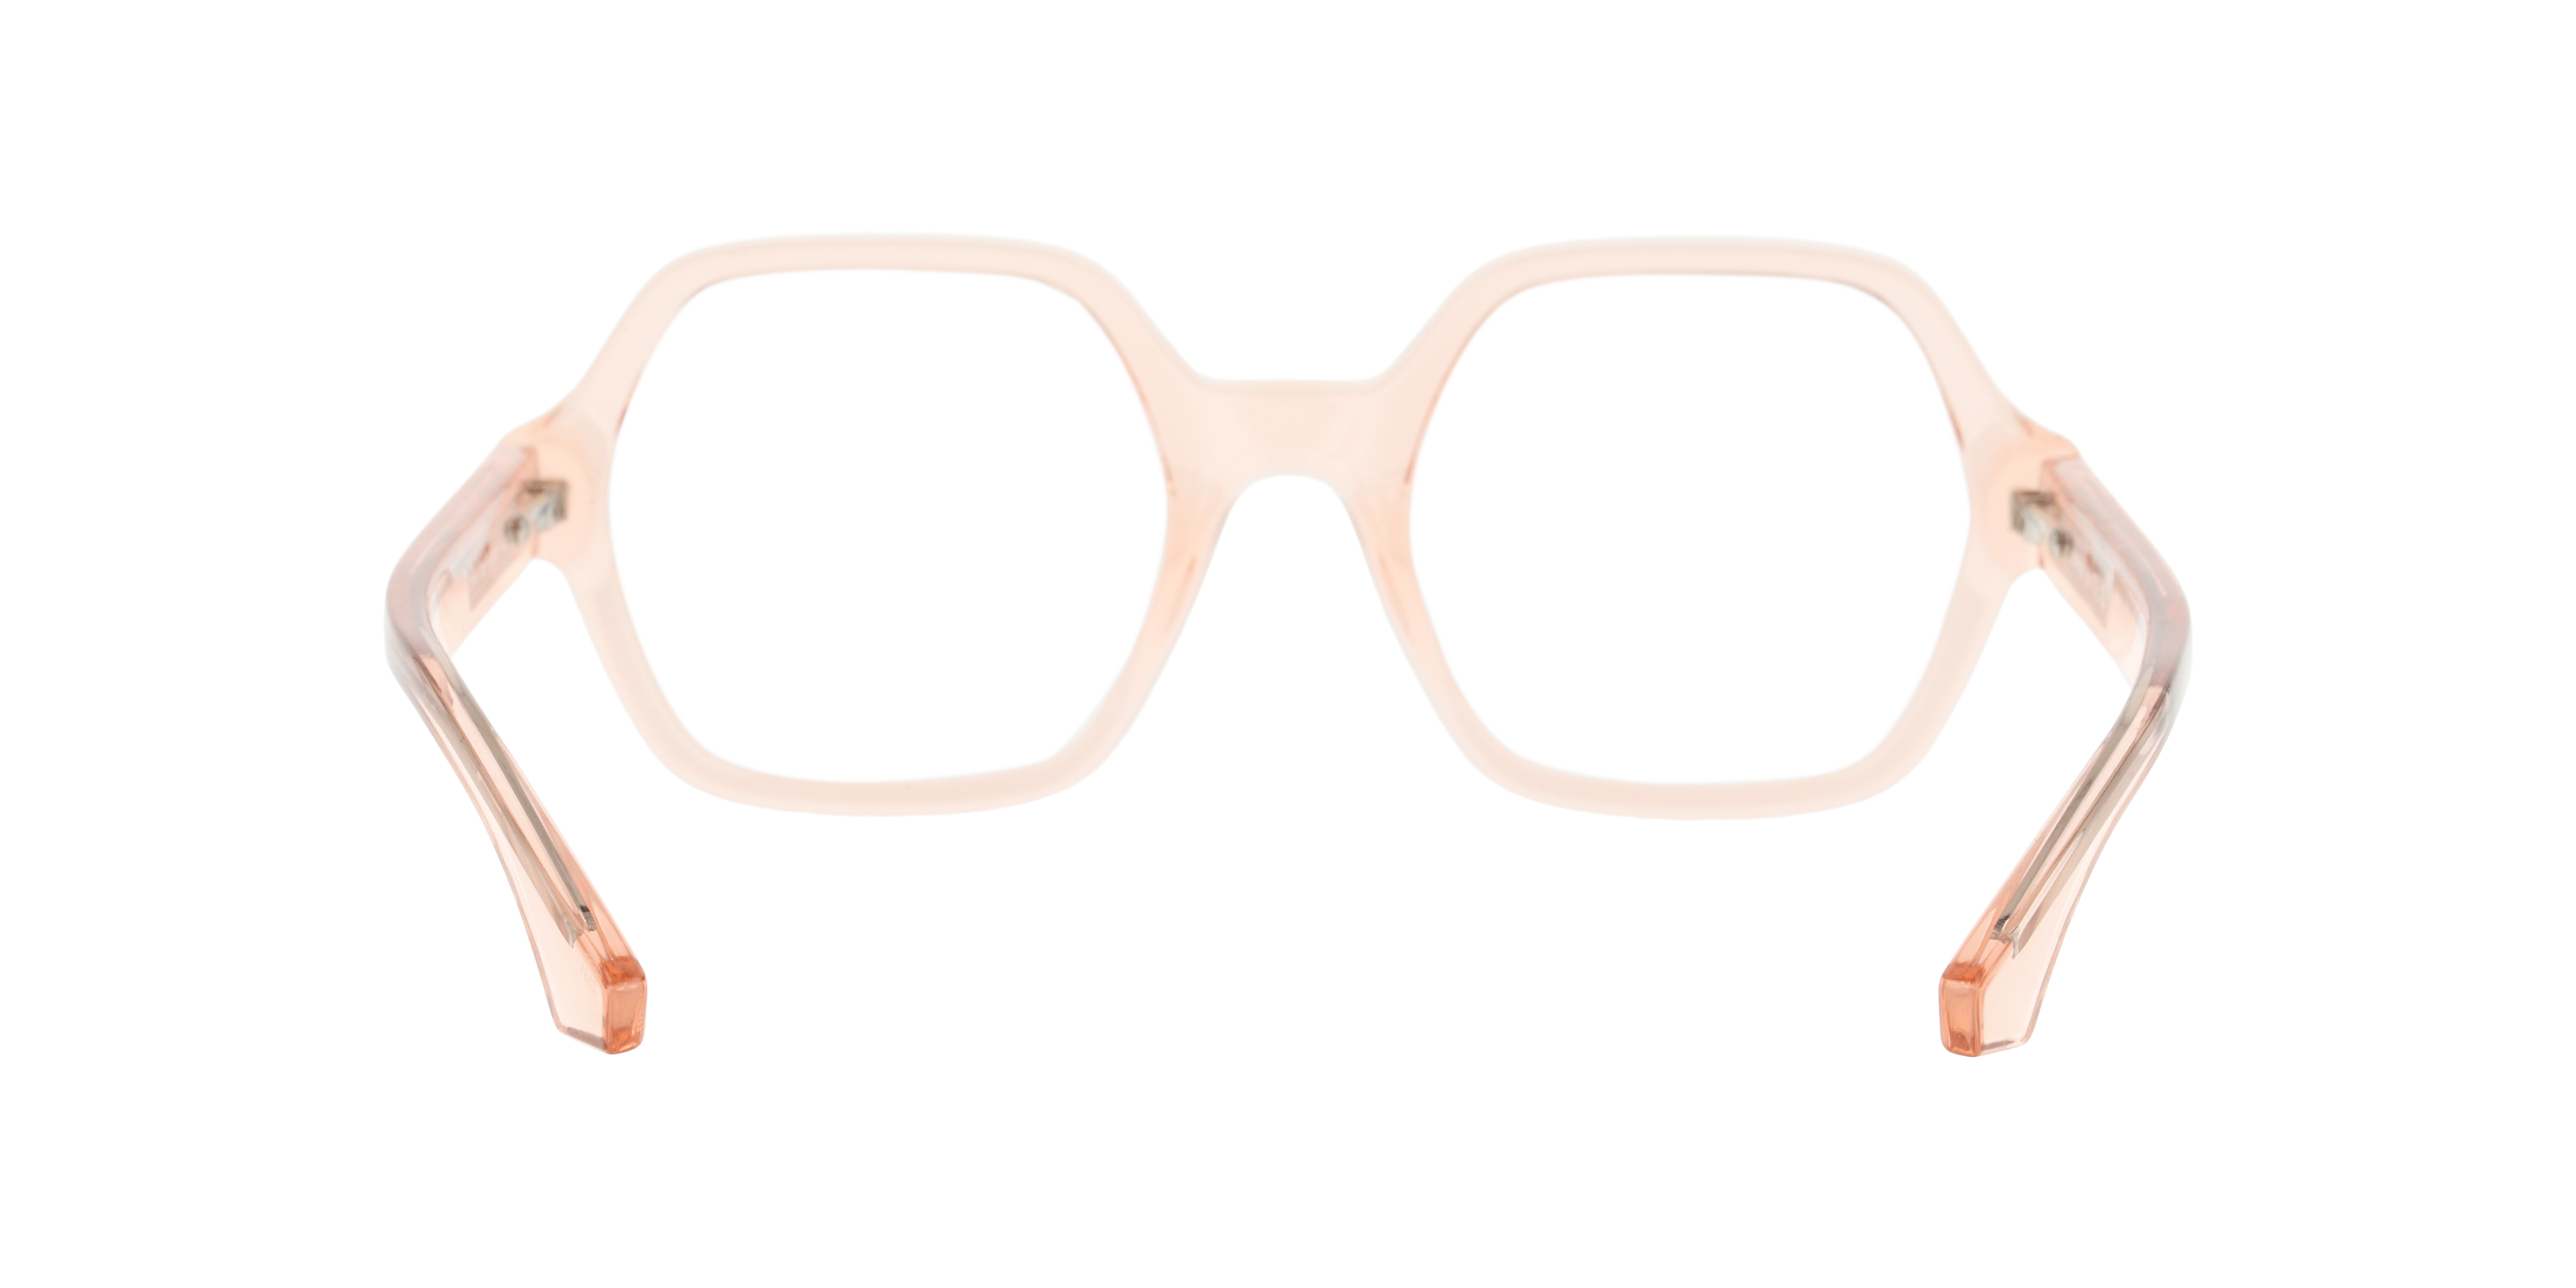 Detail02 Unofficial UO3044 Glasses Transparent / Transparent, Black